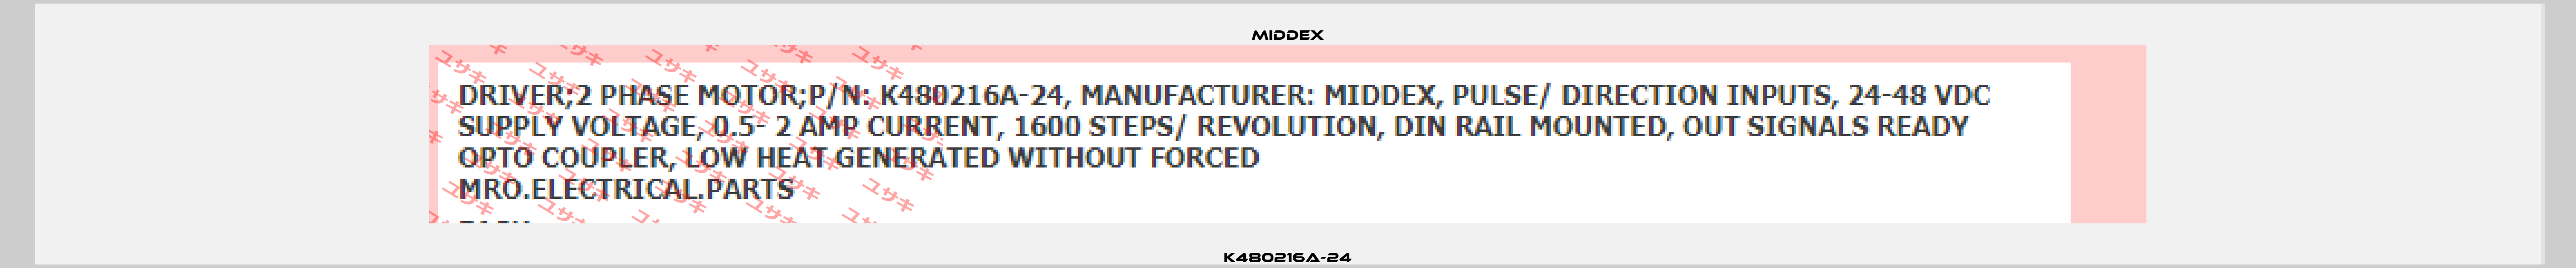 K480216A-24 Middex